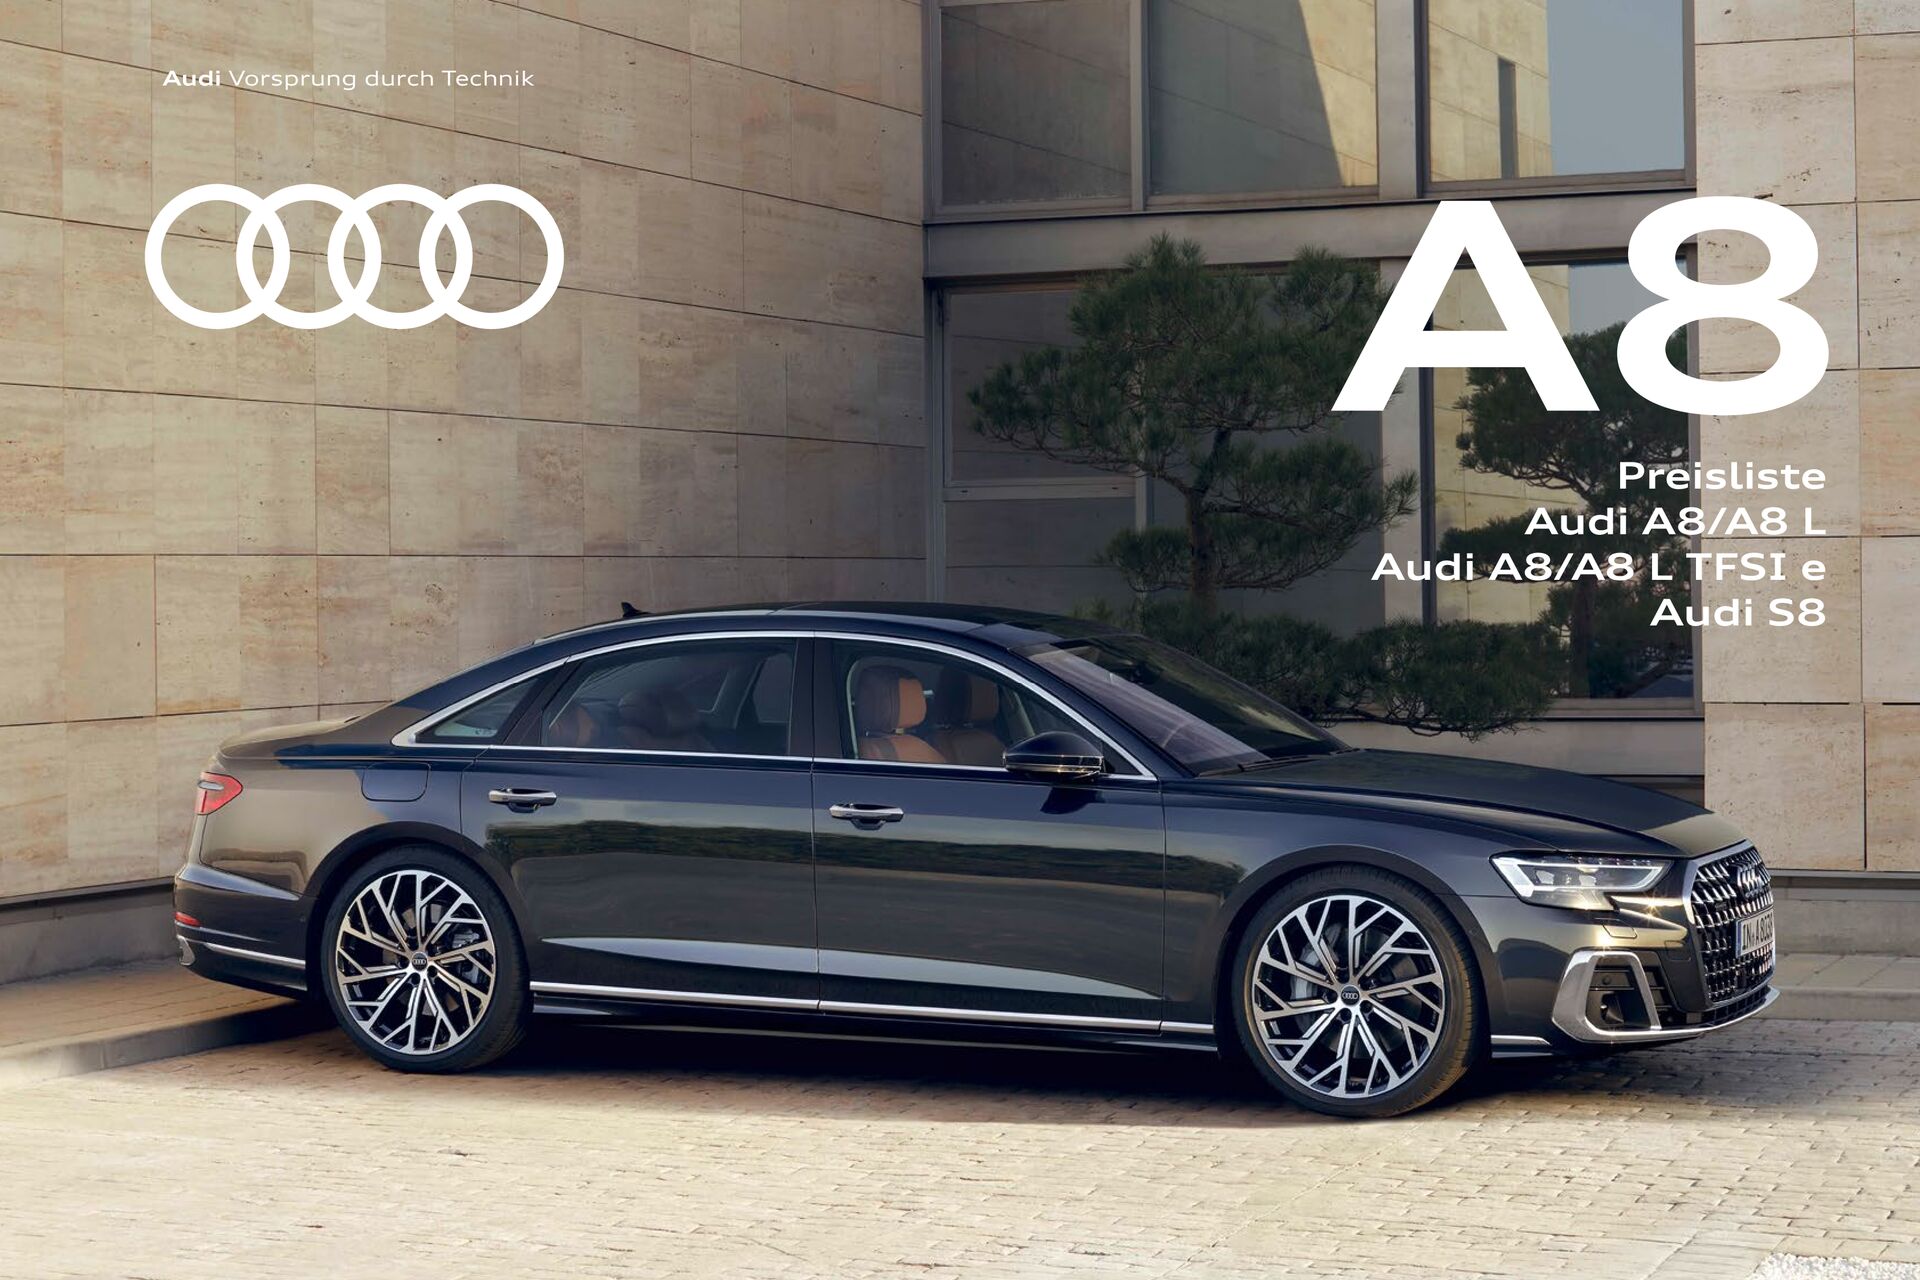 Preisliste Audi A8/A8 L / Audi A8/A8 L TFSI e / Audi S8 Modelljahr 2025